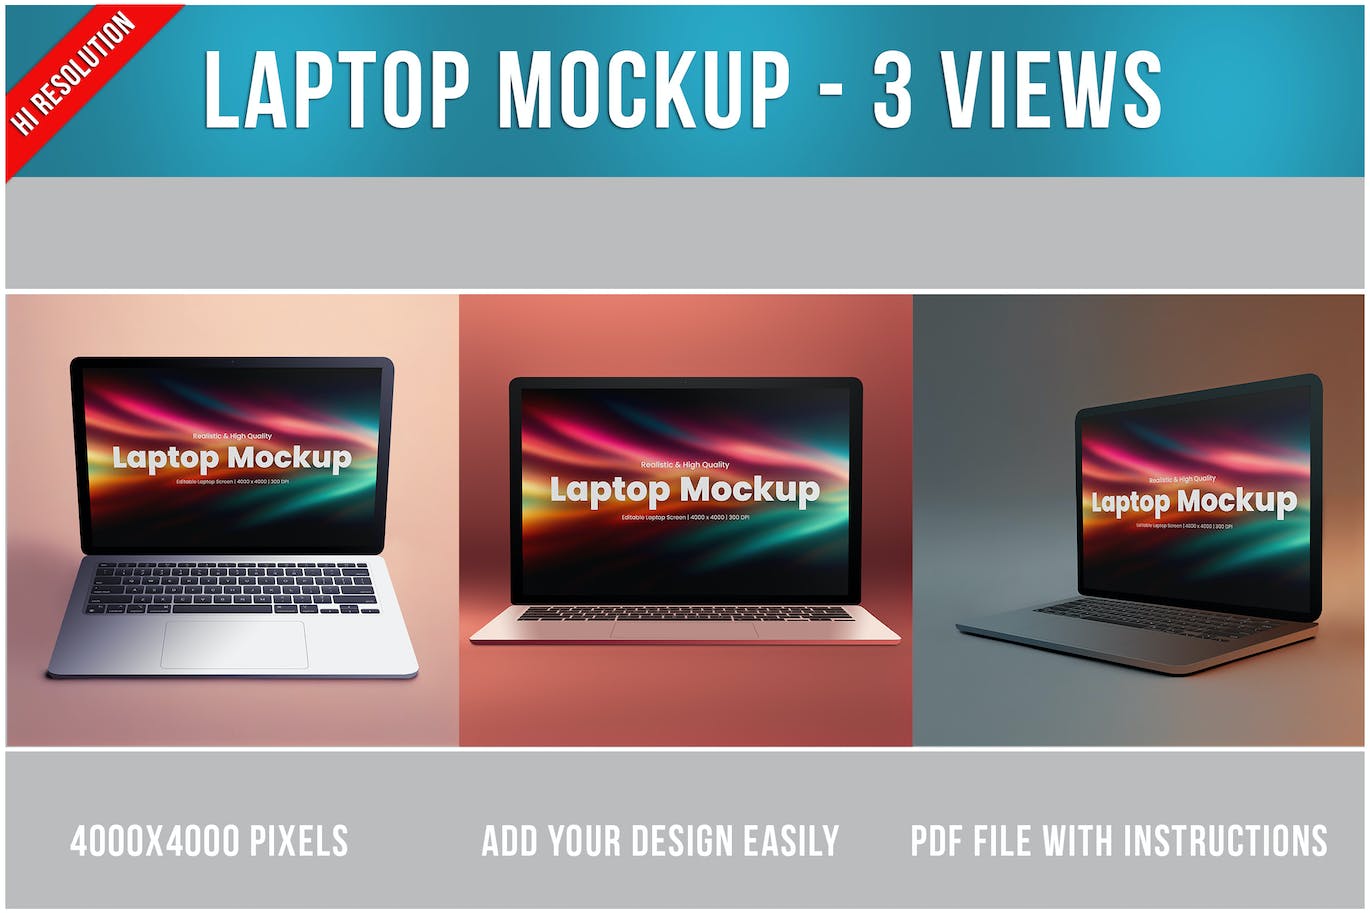 笔记本电脑网站UI展示样机 Laptop Mockup 样机素材 第1张